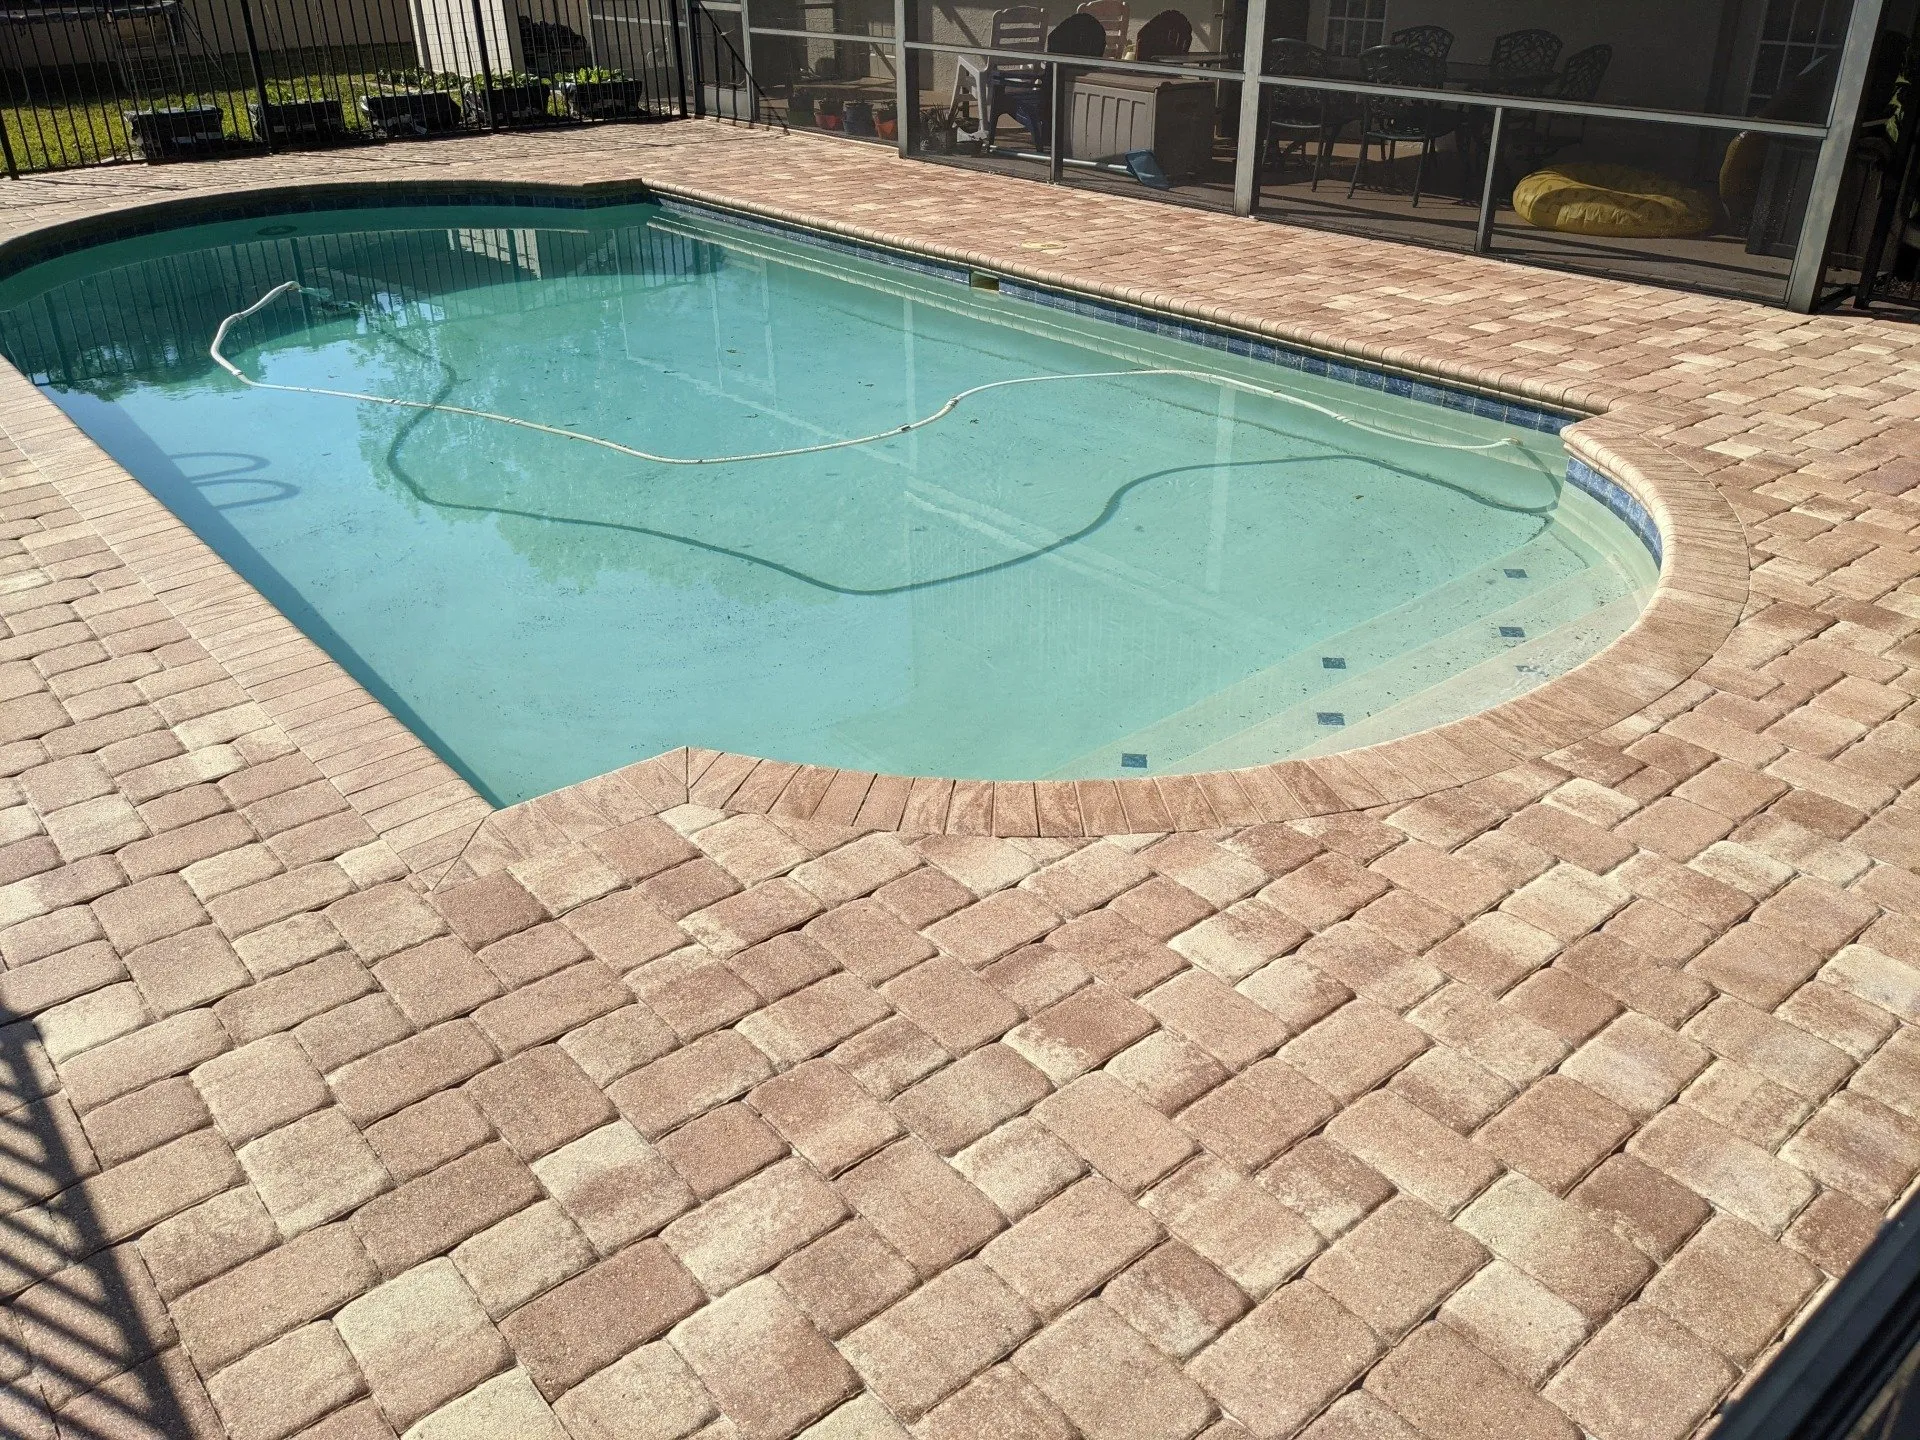 Pool deck paver sealing